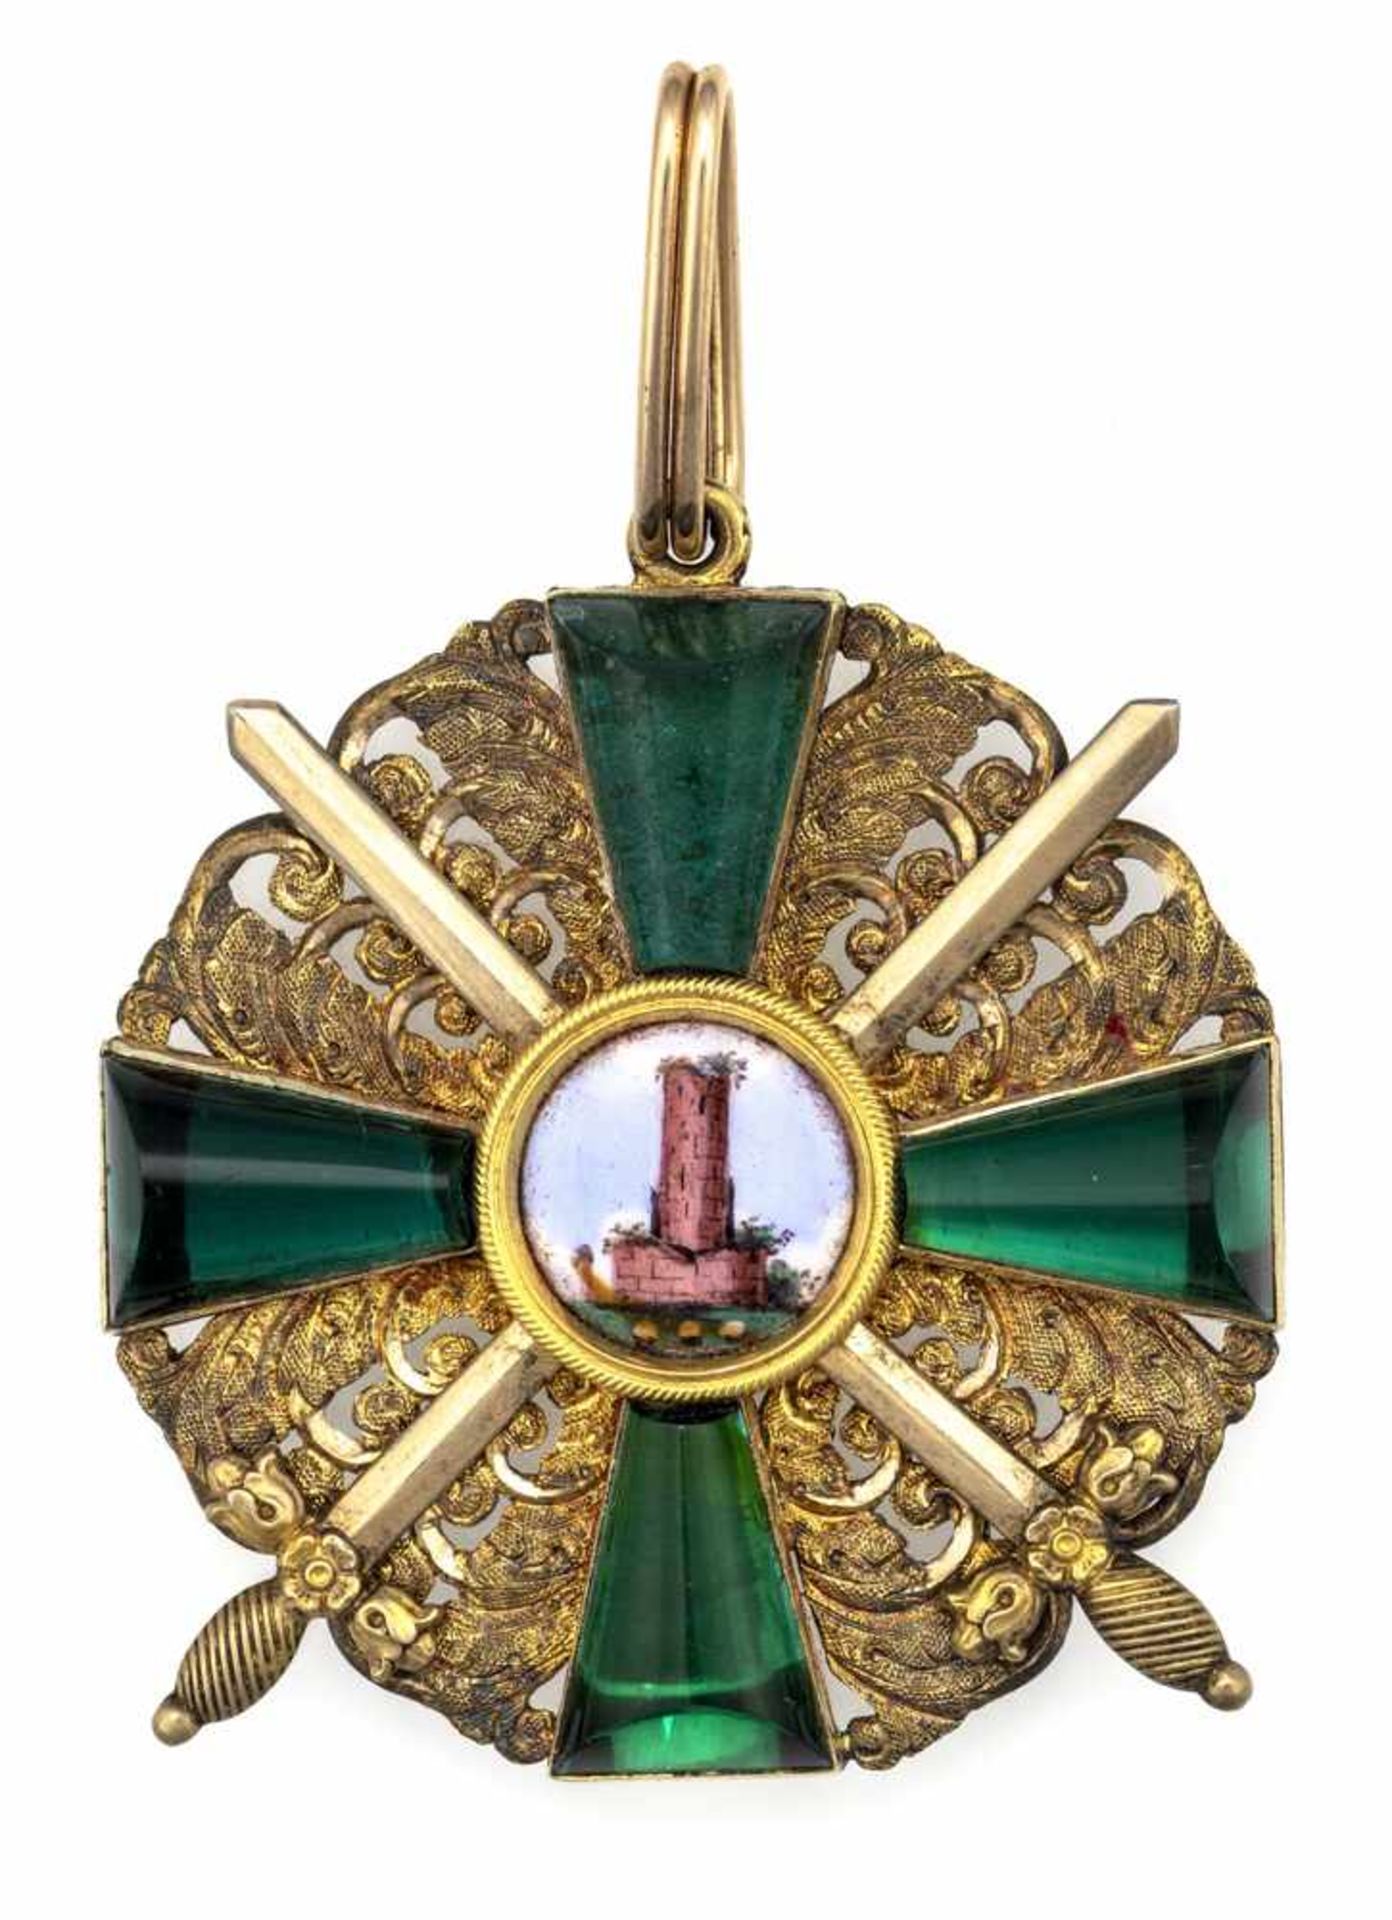 BadenOrden vom Zähringer LöwenH. 5,5 cmRitterkreuz mit Schwertern. Gold, emailliert, grüner